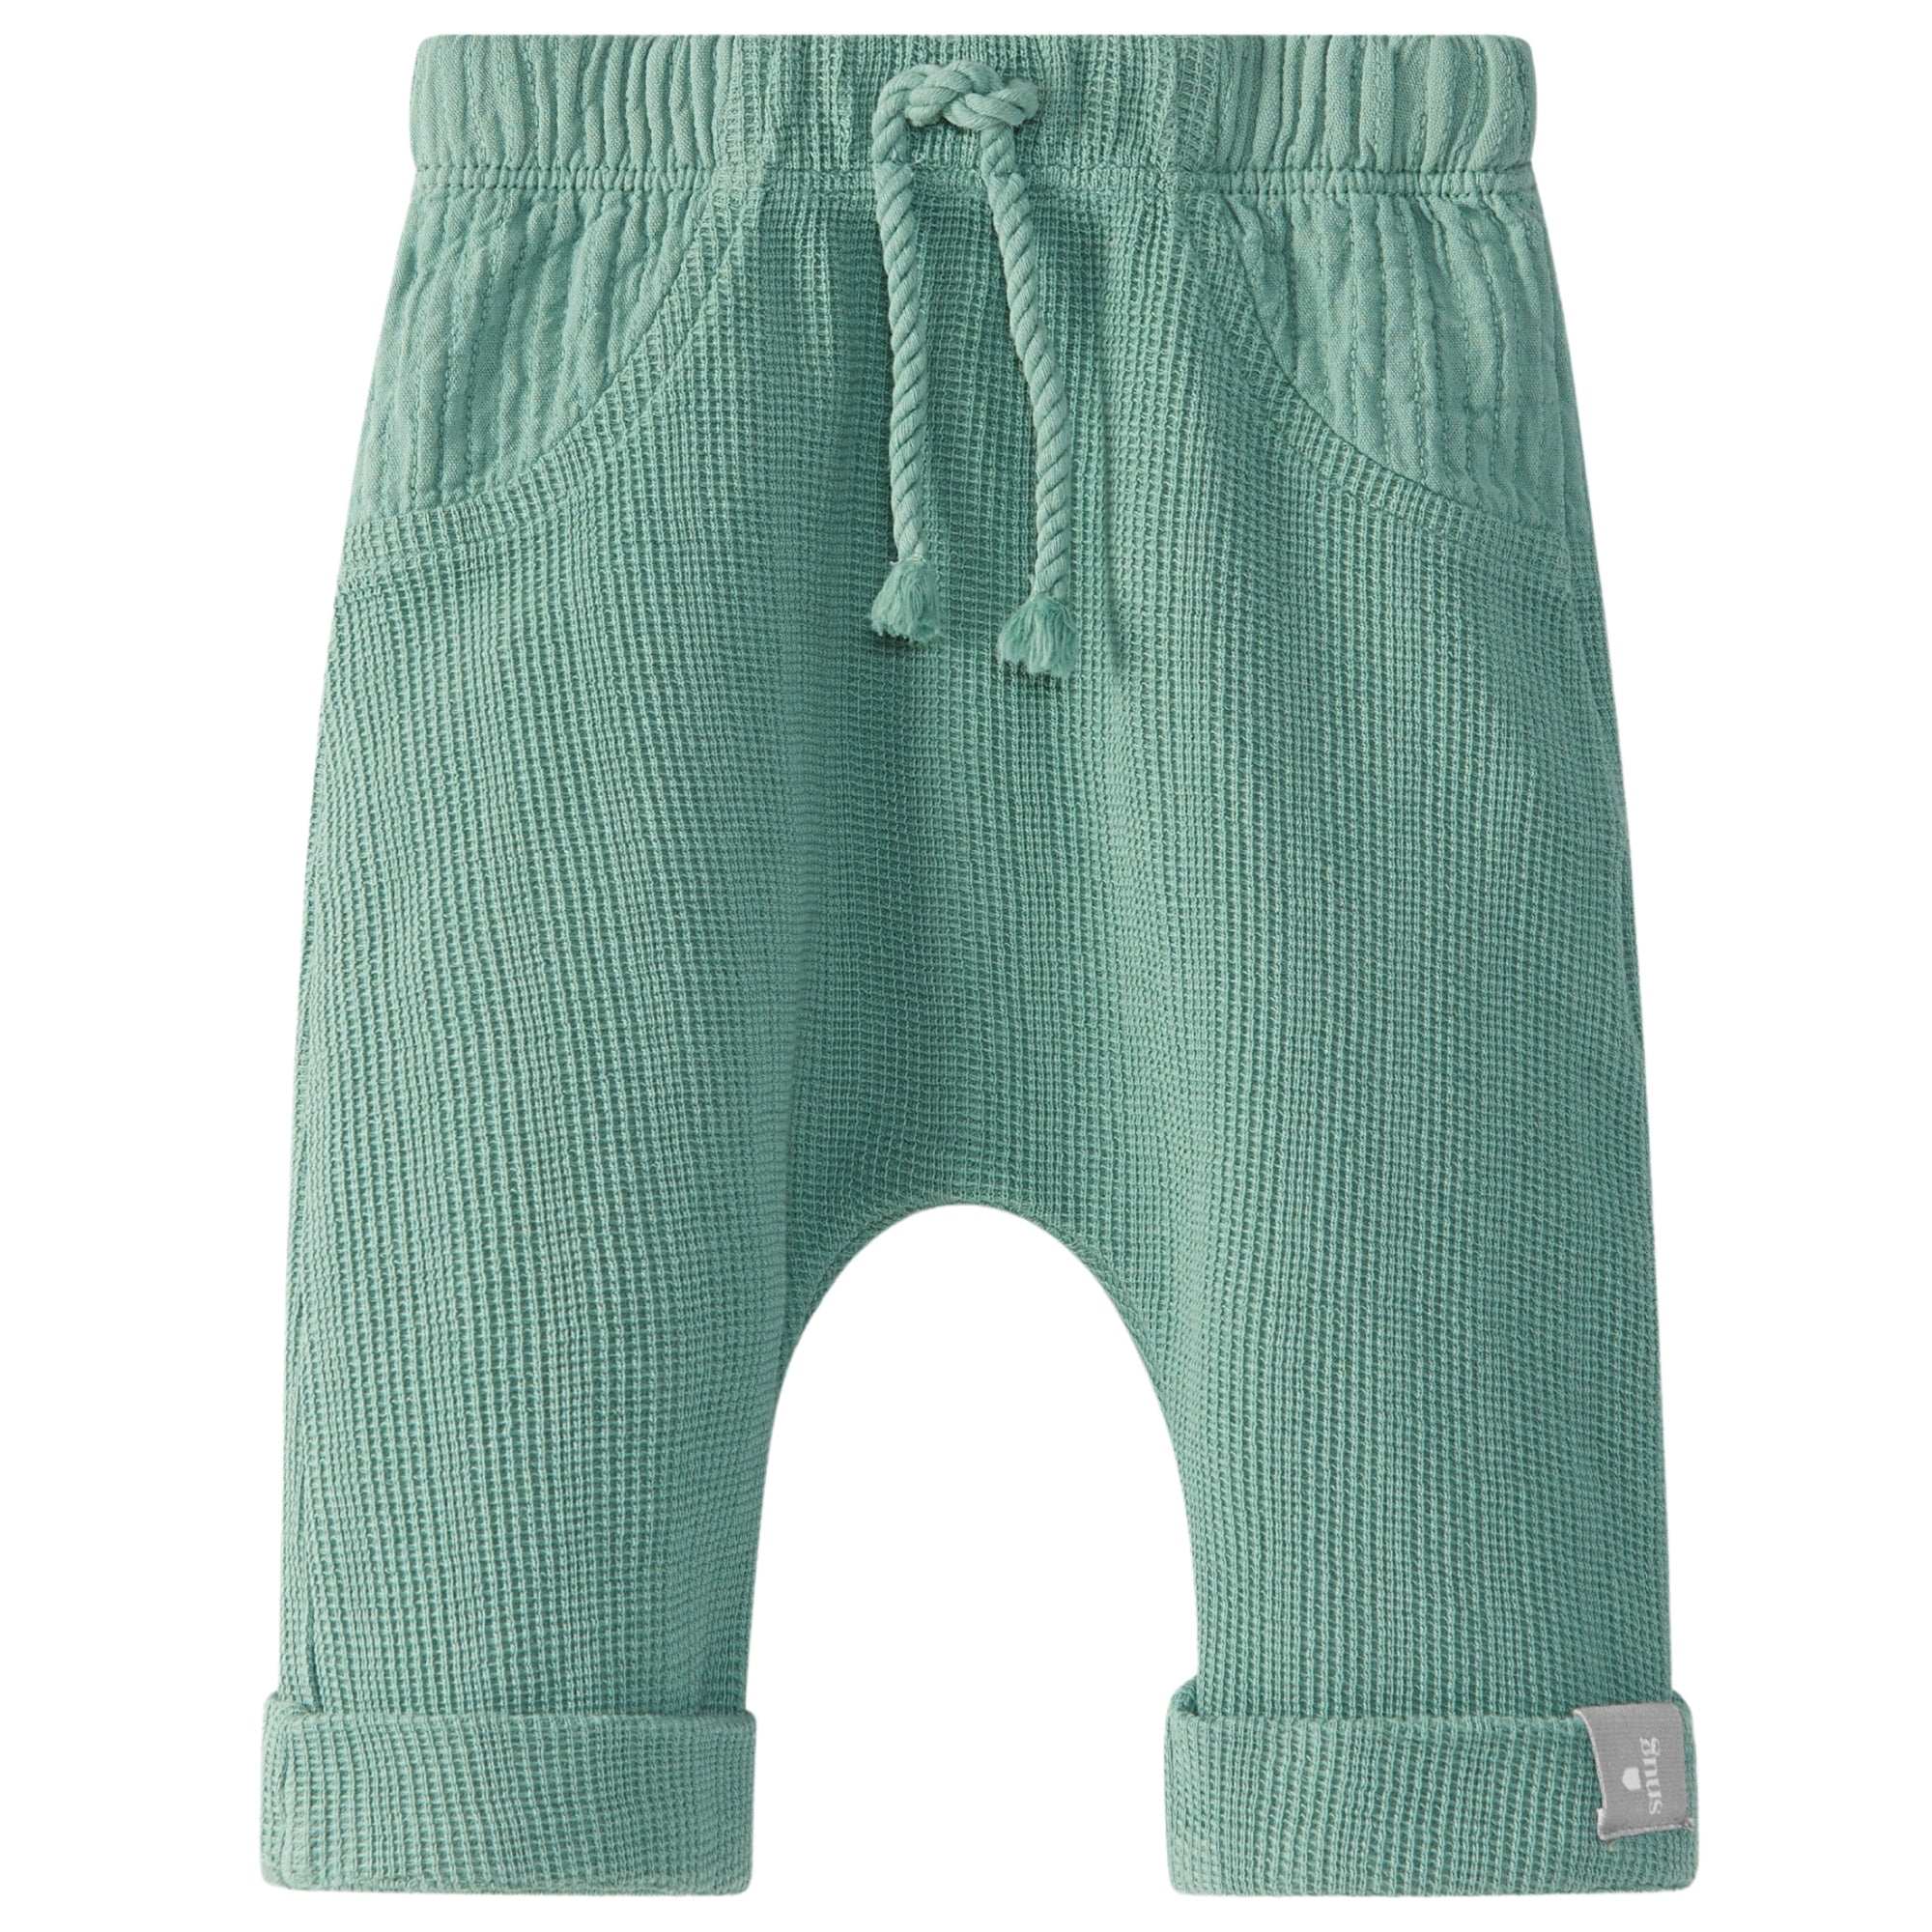 pantalone-in-cotone-colore-verde